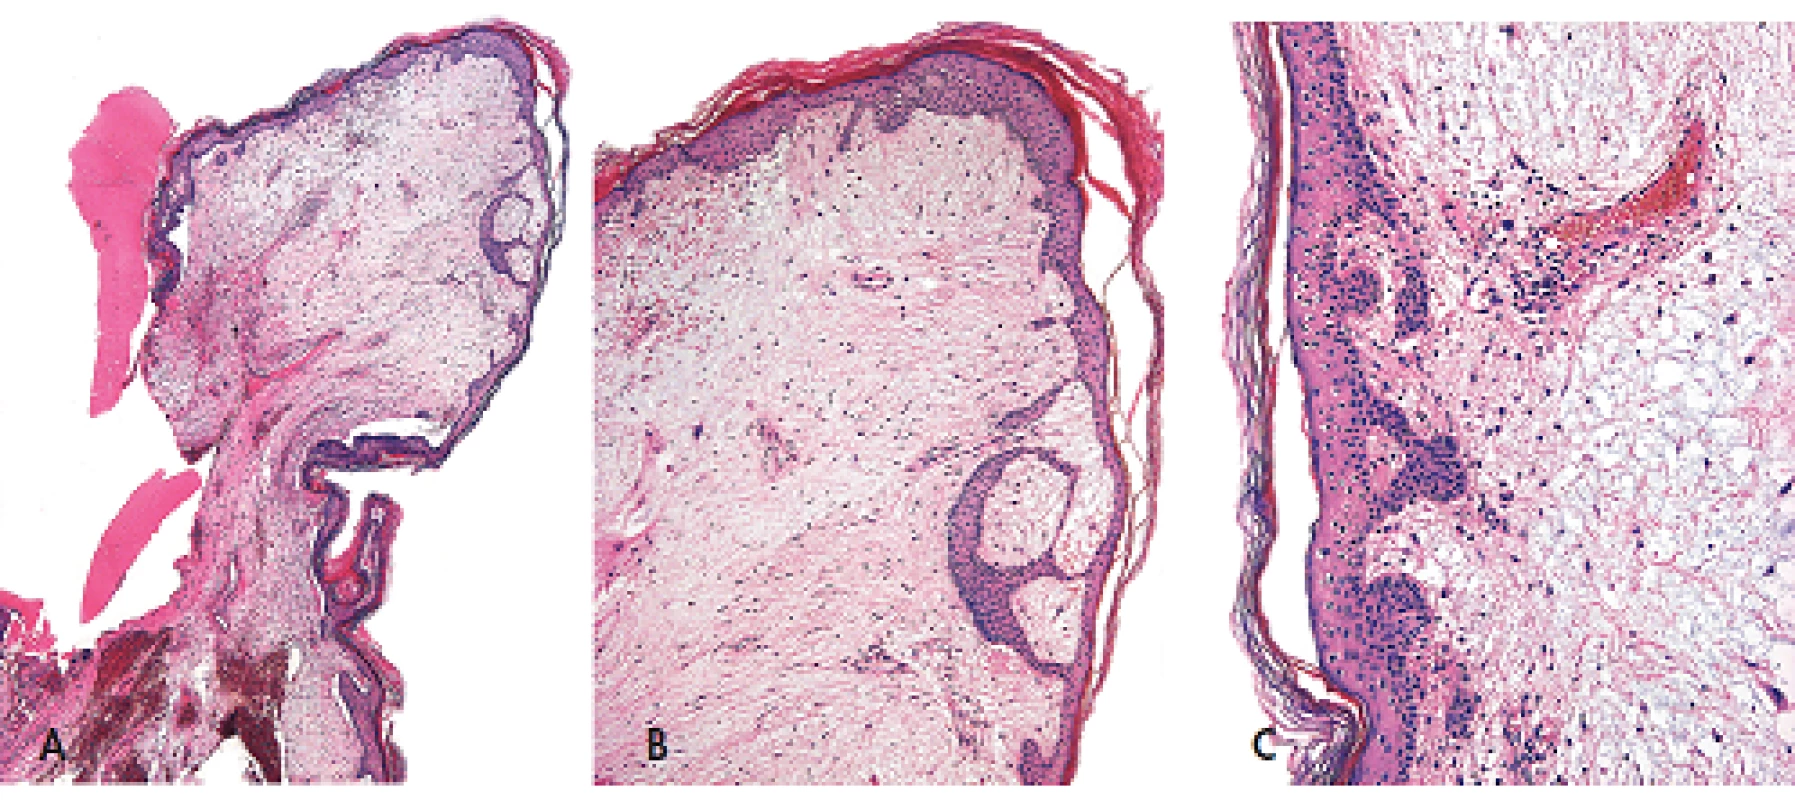 Kožní myxom polypovitého tvaru pocházející ze zevniho zvukovodu (A, zvětšení 20x) s nápadnými změnami epidermis nad ním ležící. Tyto změny mají podobu navzájem propojených pruhů epitelových buněk s periferním palisádováním (B, zvětšení 40x; C, zvětšeni 100x). Barveno hematoxylinem eozinem.